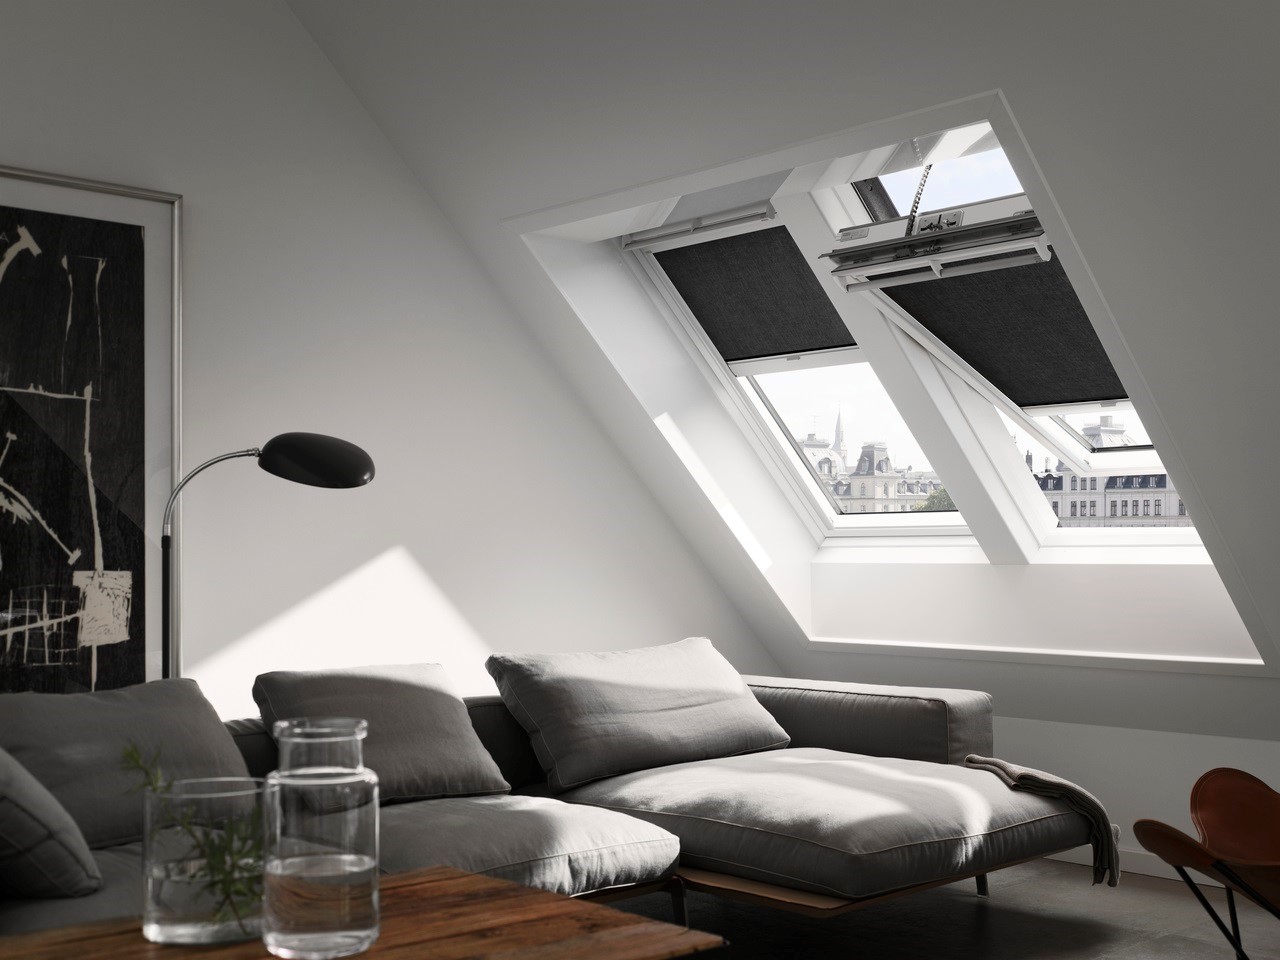 با کمک گرفتن از اسکای لایت میتوانید نور طبیعی را به راحتی وارد منزل خود کنید